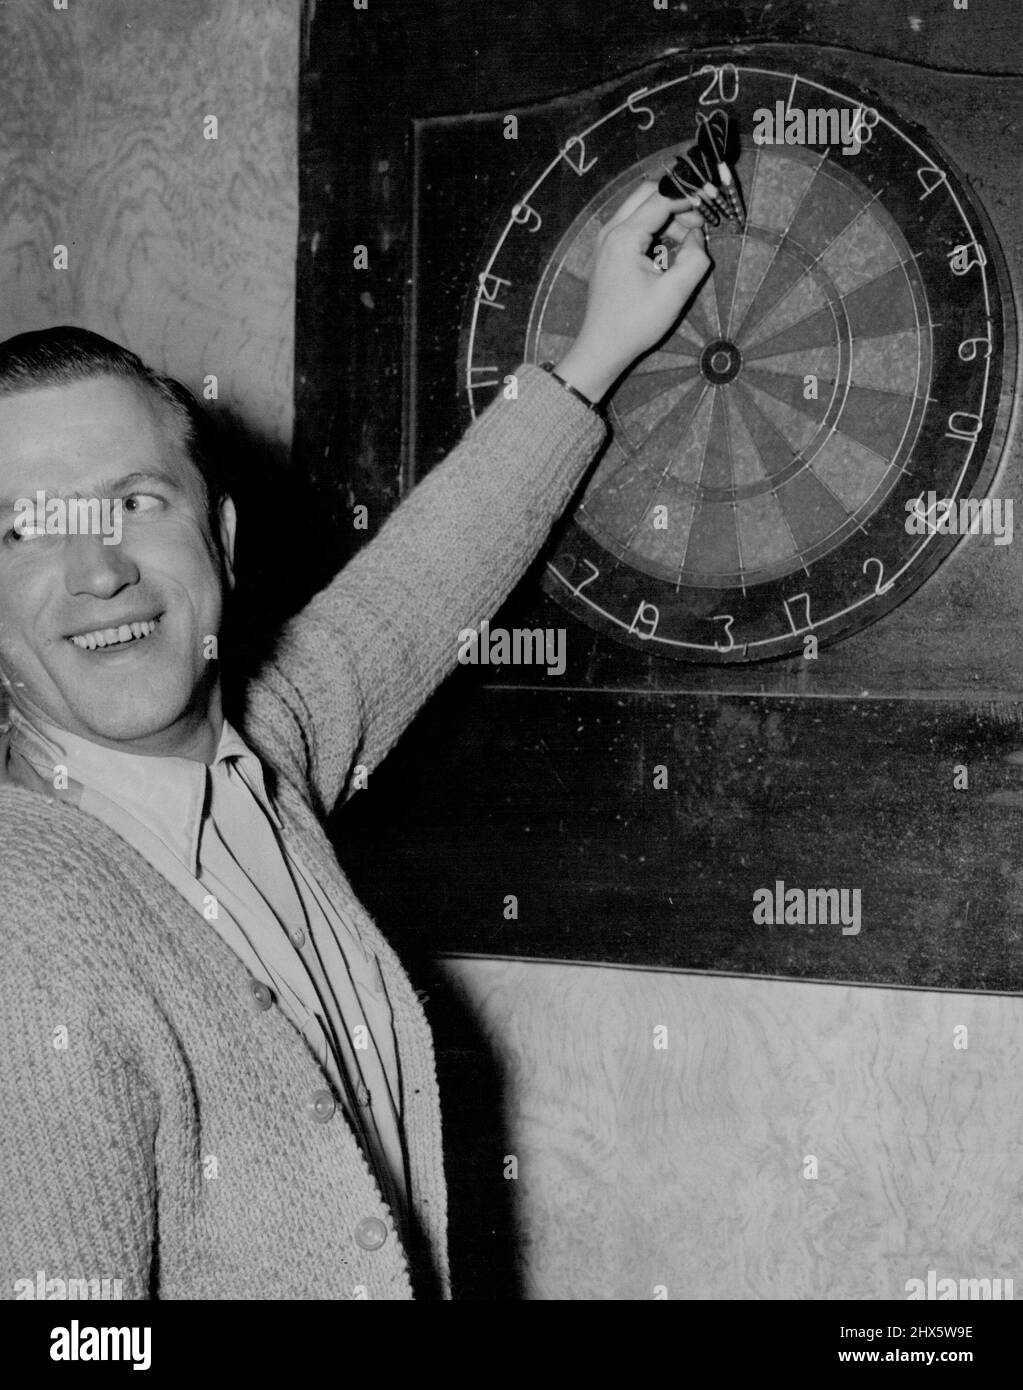 Jim Jess, ein Spieler des Coronation Hotels, zeigt triumphierend seine Punktzahl zwei dreifache 20er (120) und eine 20. Ein DART im Sektor 20 und zwei in der „Triple-20“-Wertung 140. Möglich ist 180. 21. September 1955. Sport, Sport, Athlet, athletisch, Stockfoto